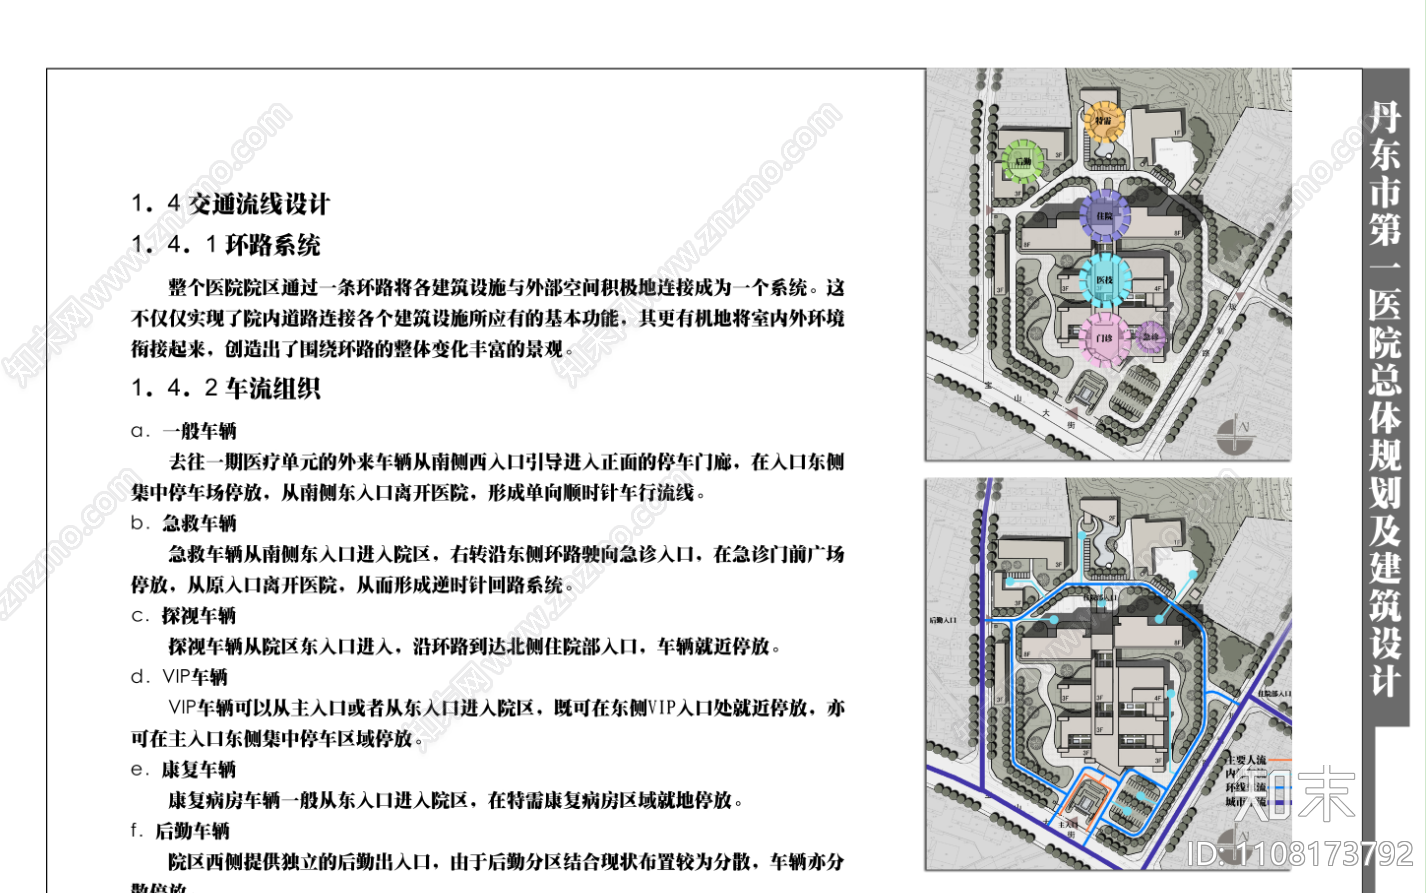 丹东第一人民医院总体规划及建筑设计方案下载【ID:1108173792】